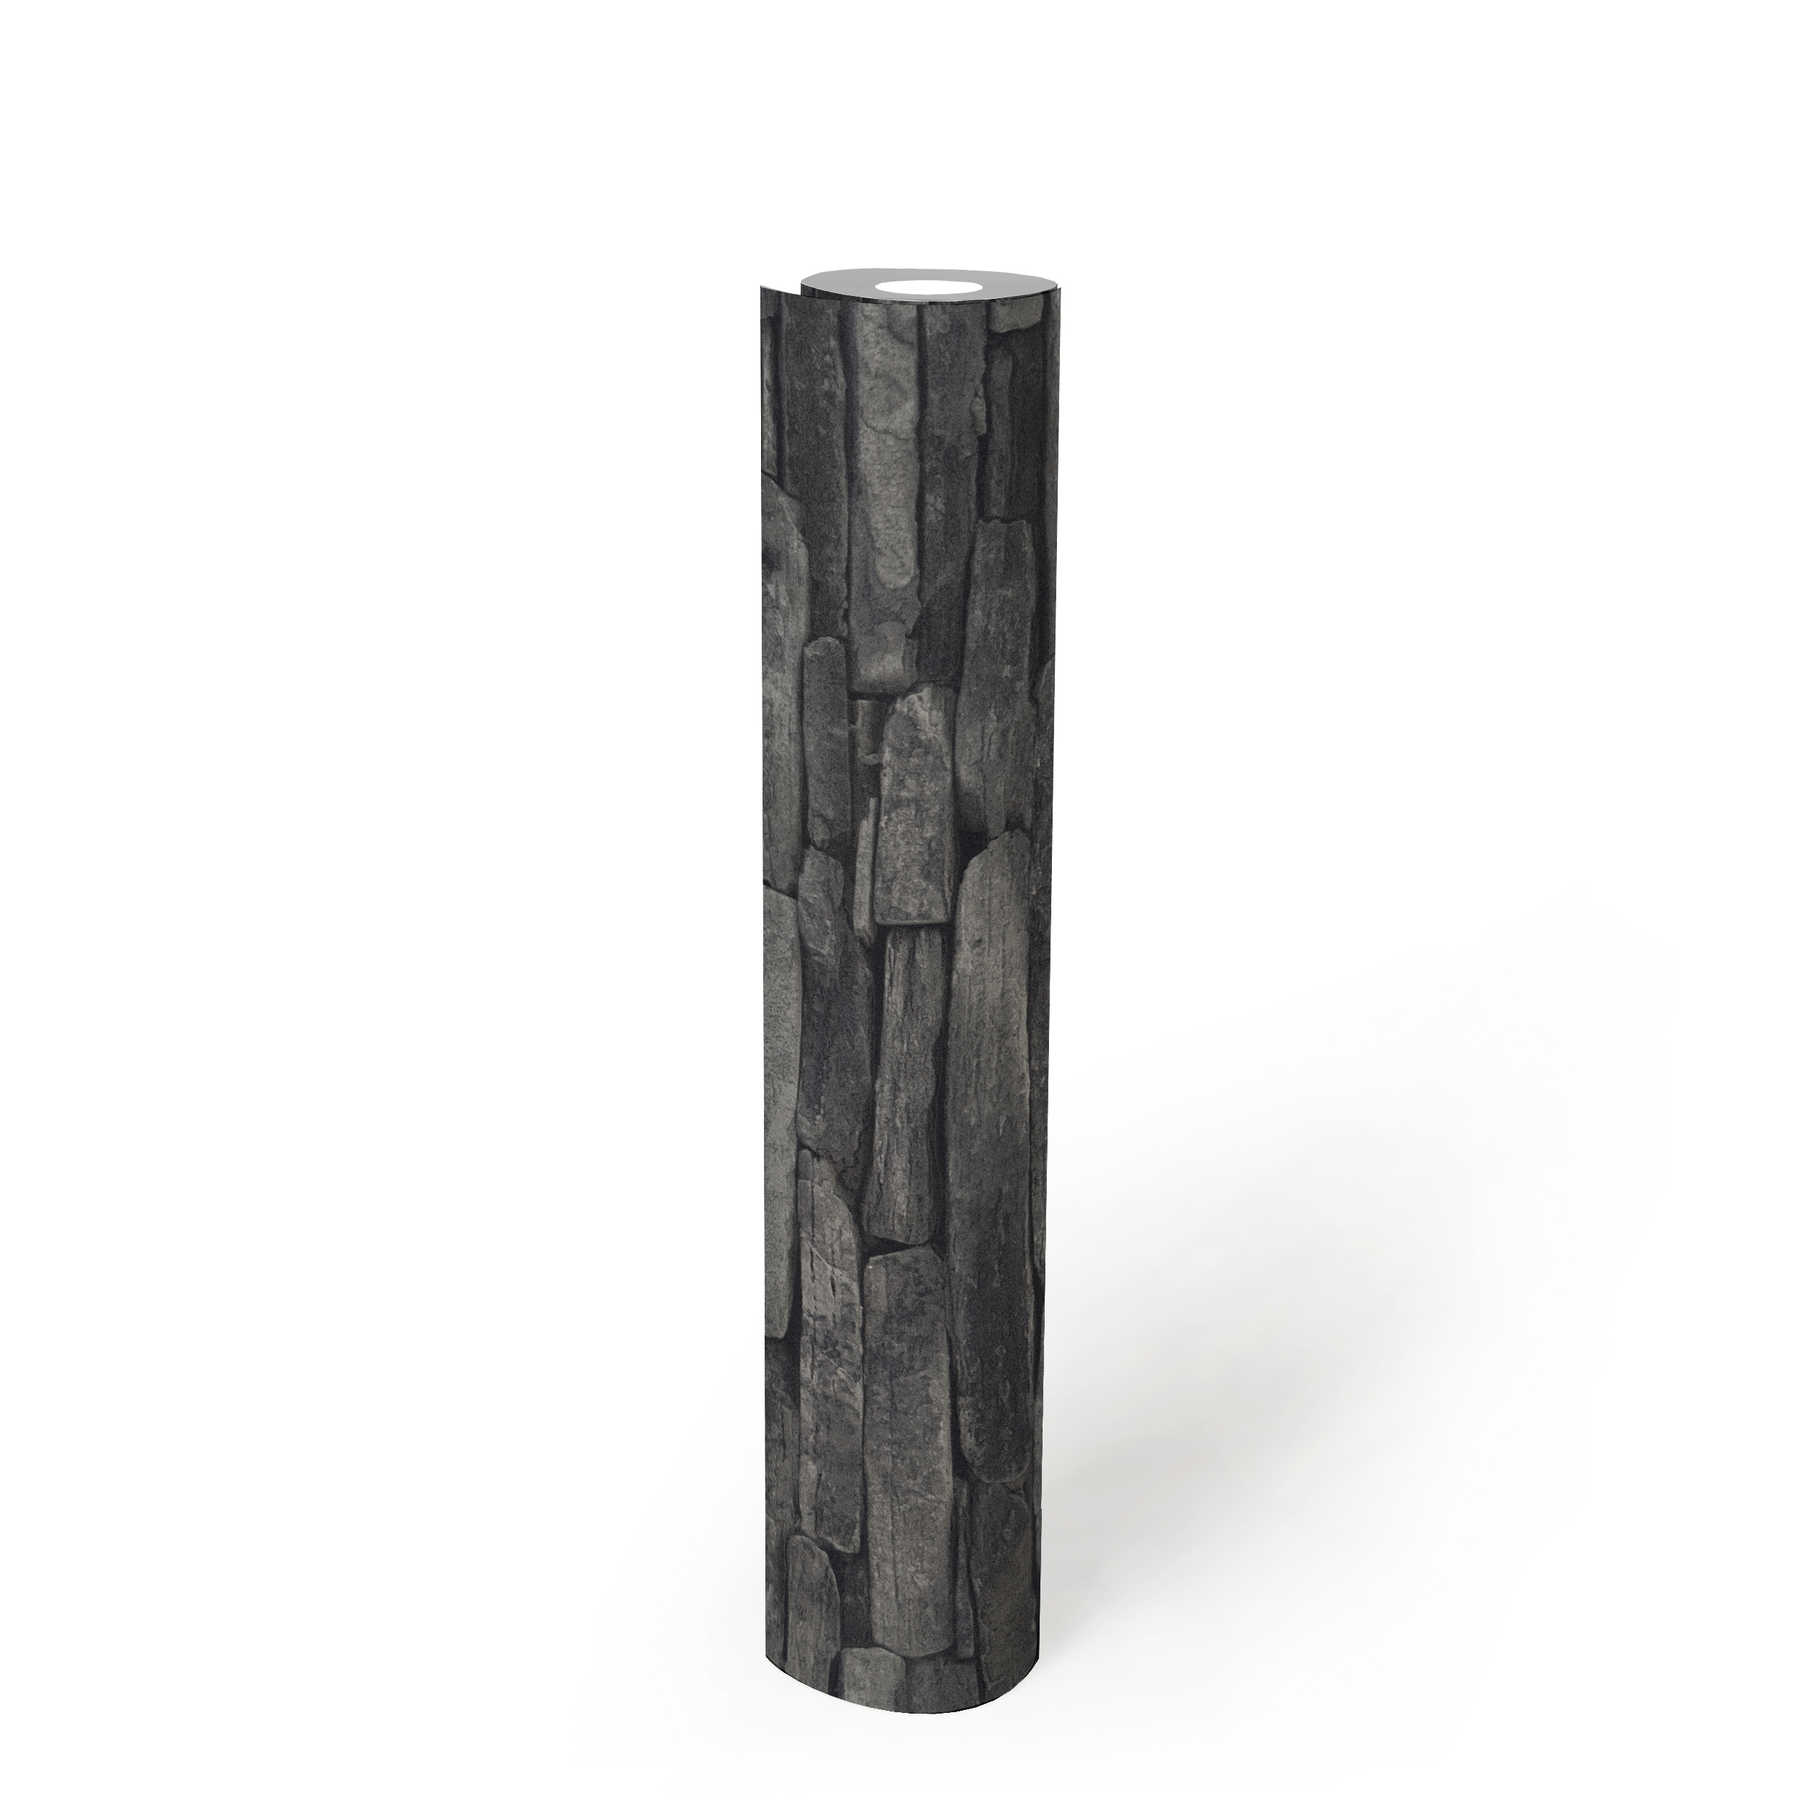             Carta da parati con effetto pietra, pietre naturali scure ed effetto 3D - grigio, nero
        